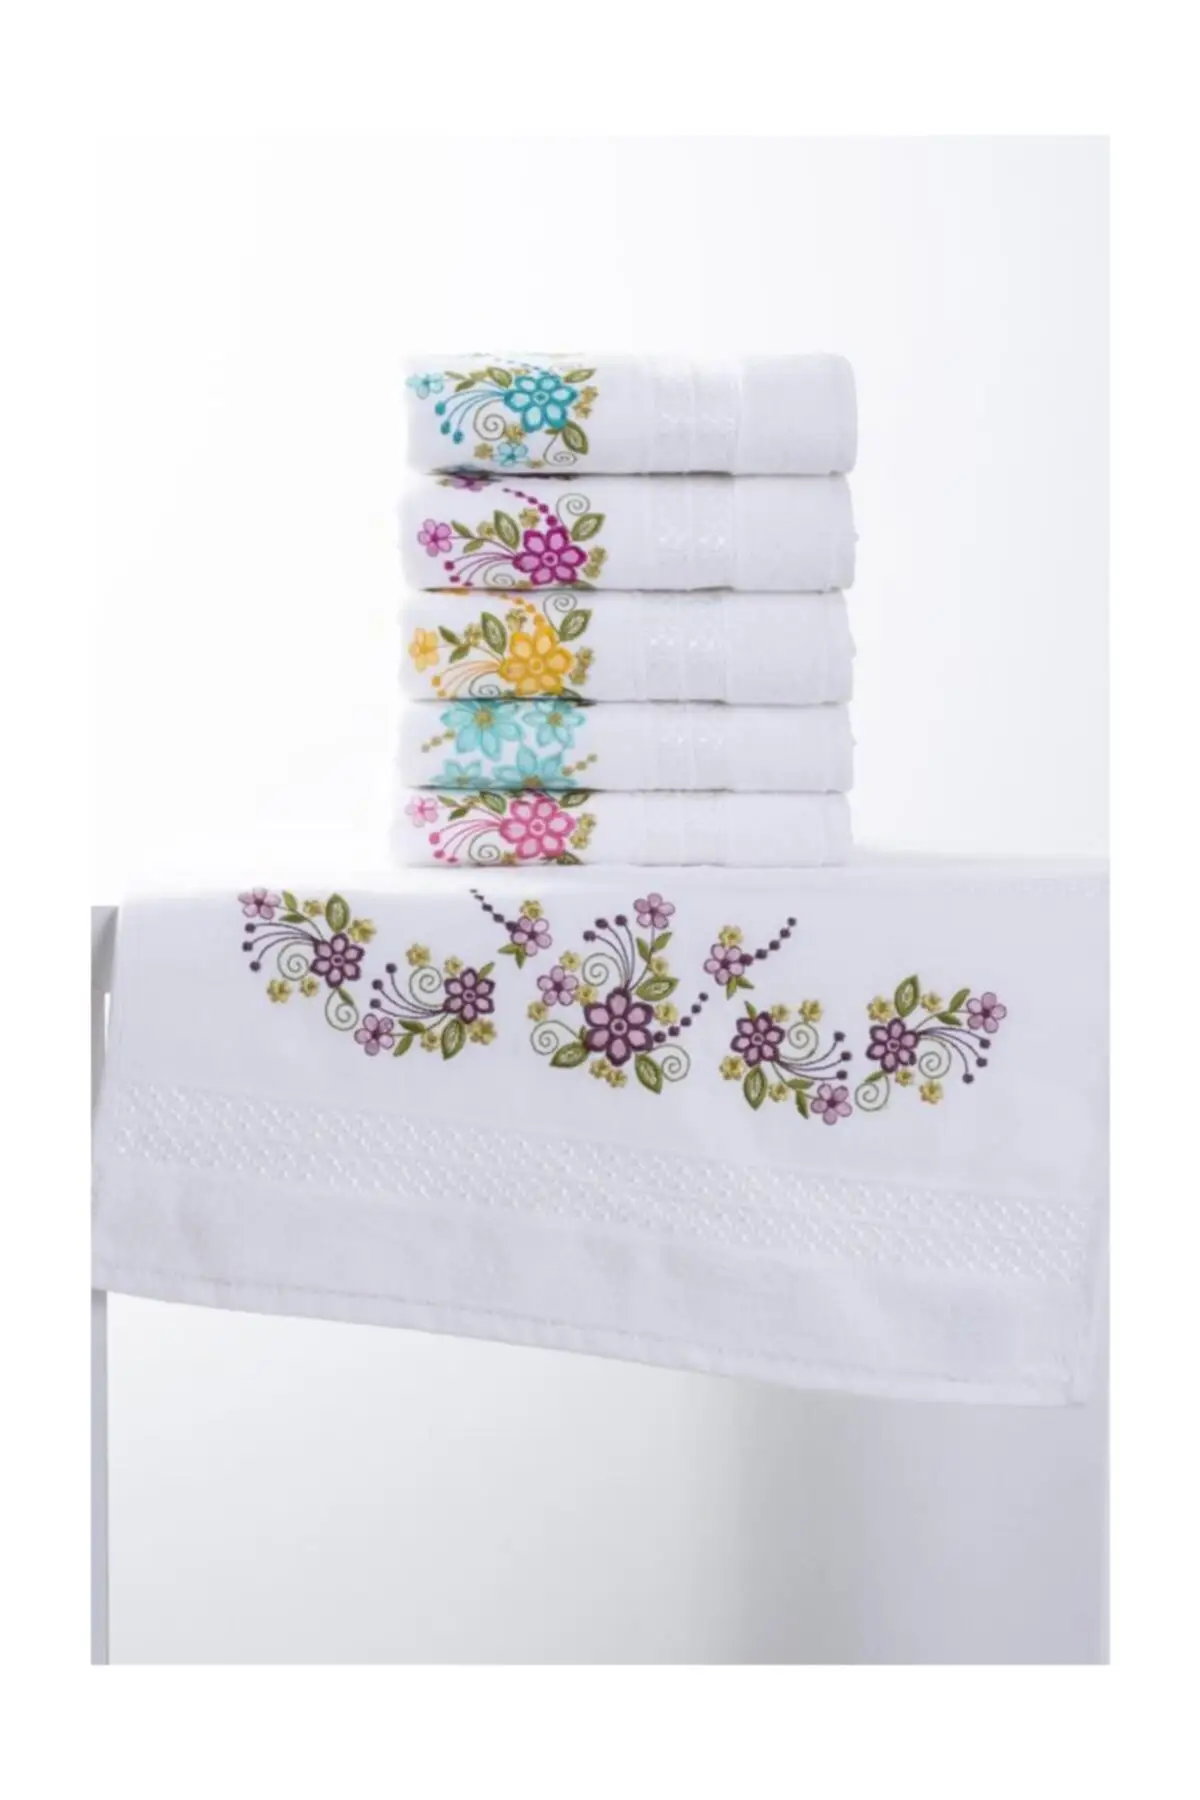 

Банное полотенце, чистый мягкий кардадуральный бархат, жаккардовый размер, 12 комплектов полотенец, размеры 50x90